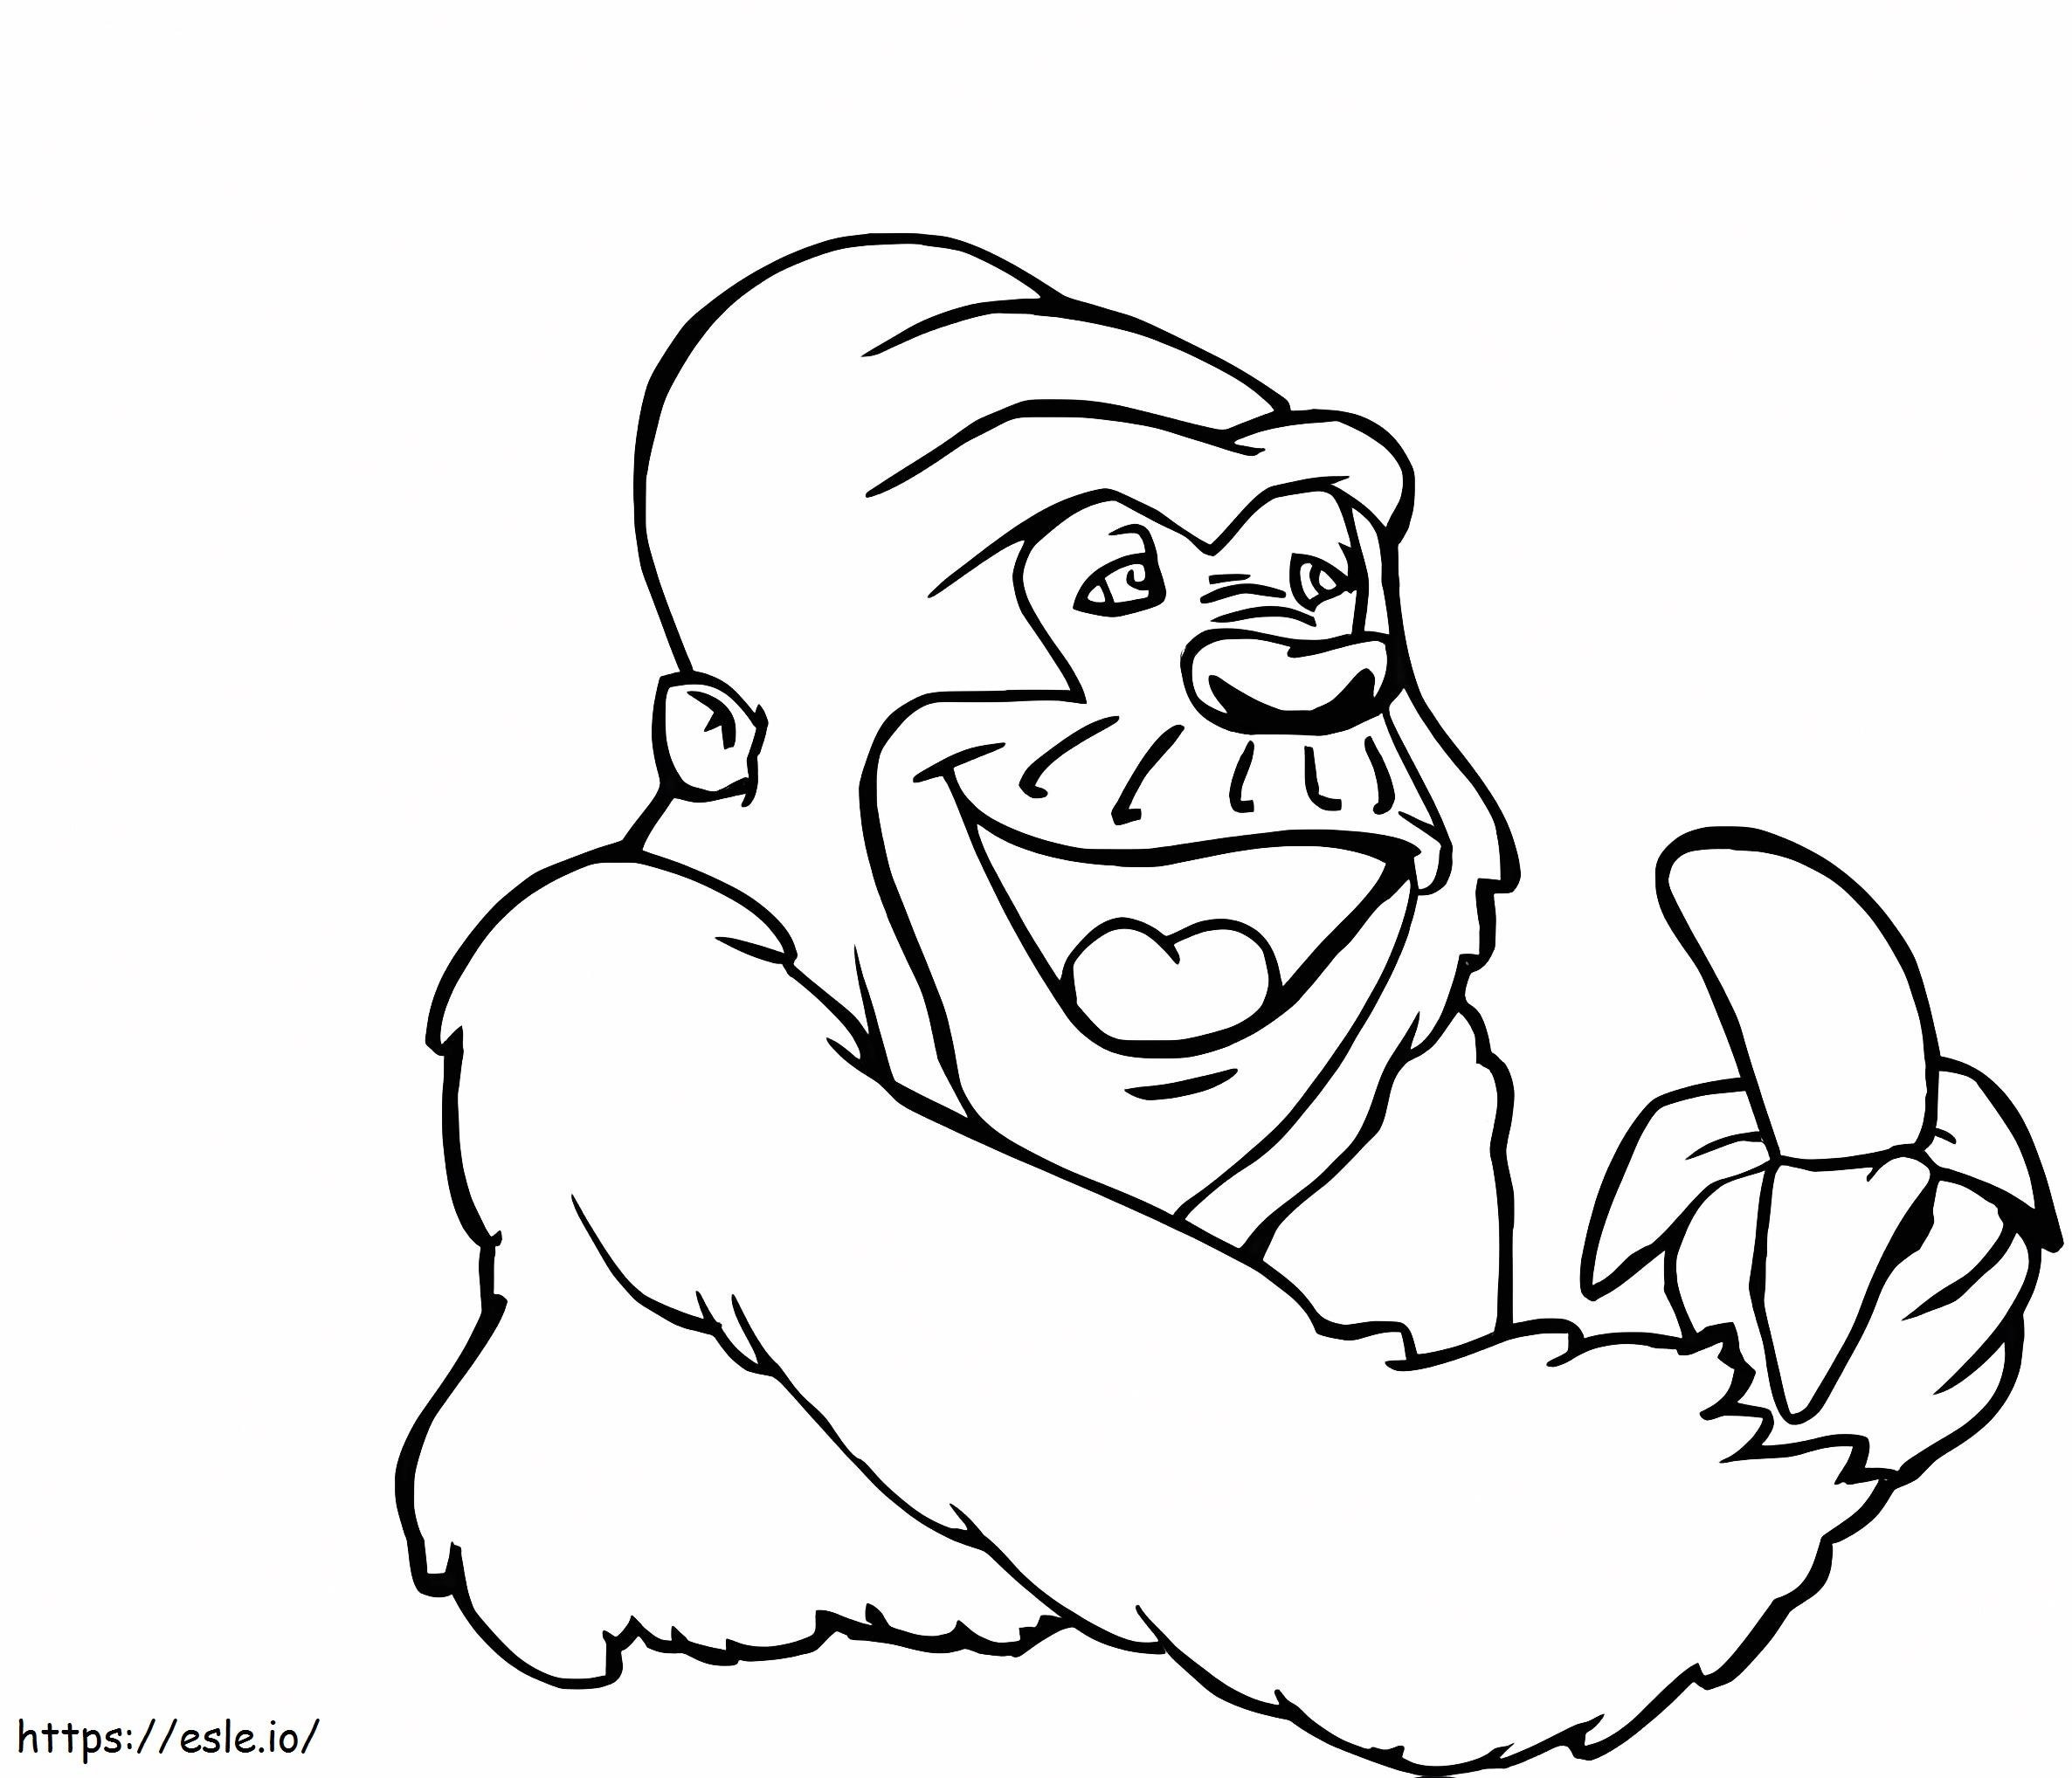 Gorilla Holding Banana coloring page